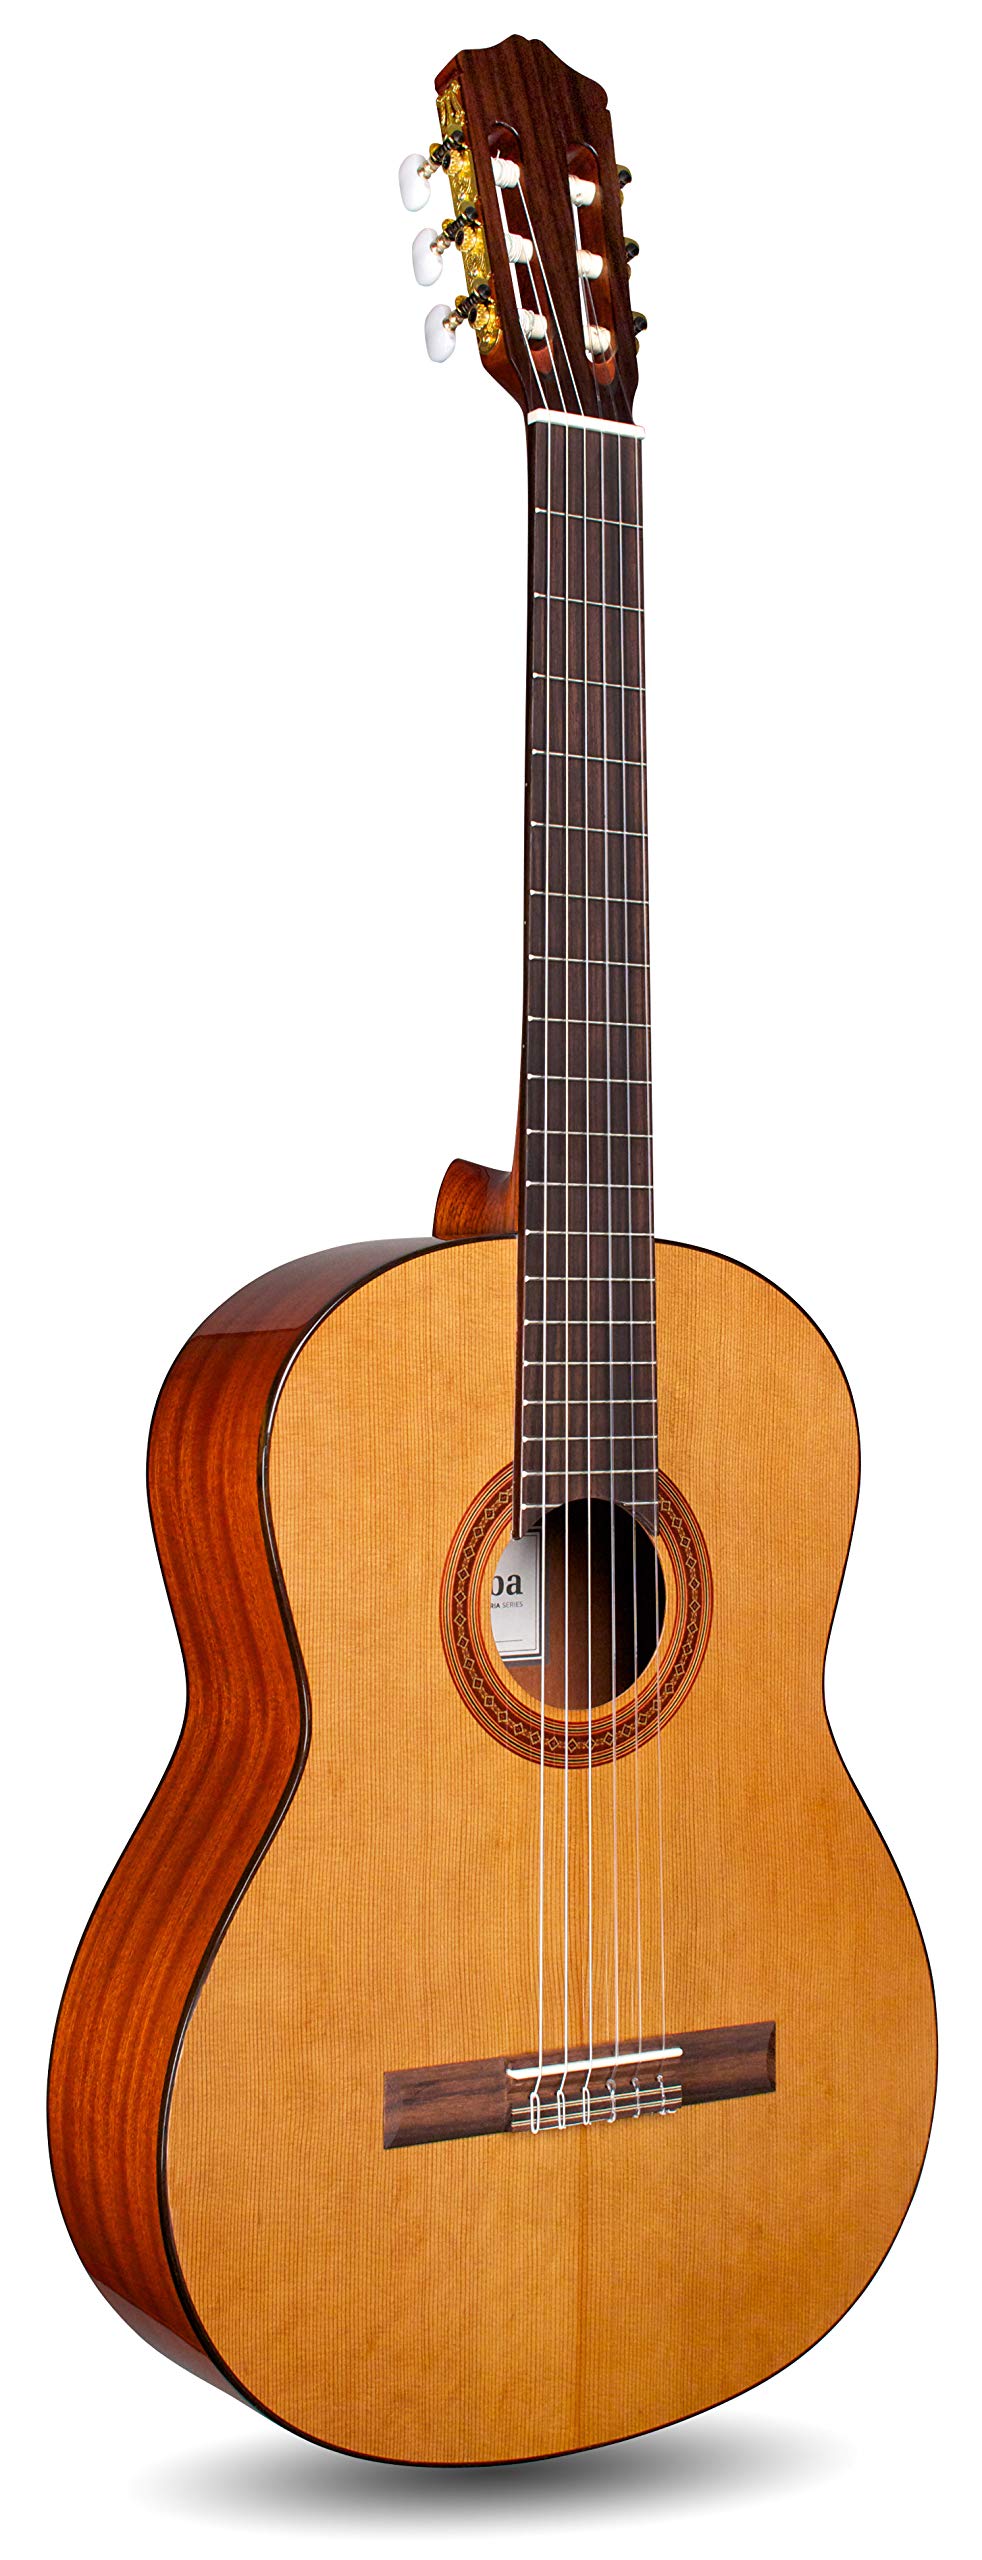 Cordoba Guitars Guitarra acústica clásica C5 con cuerdas de nailon